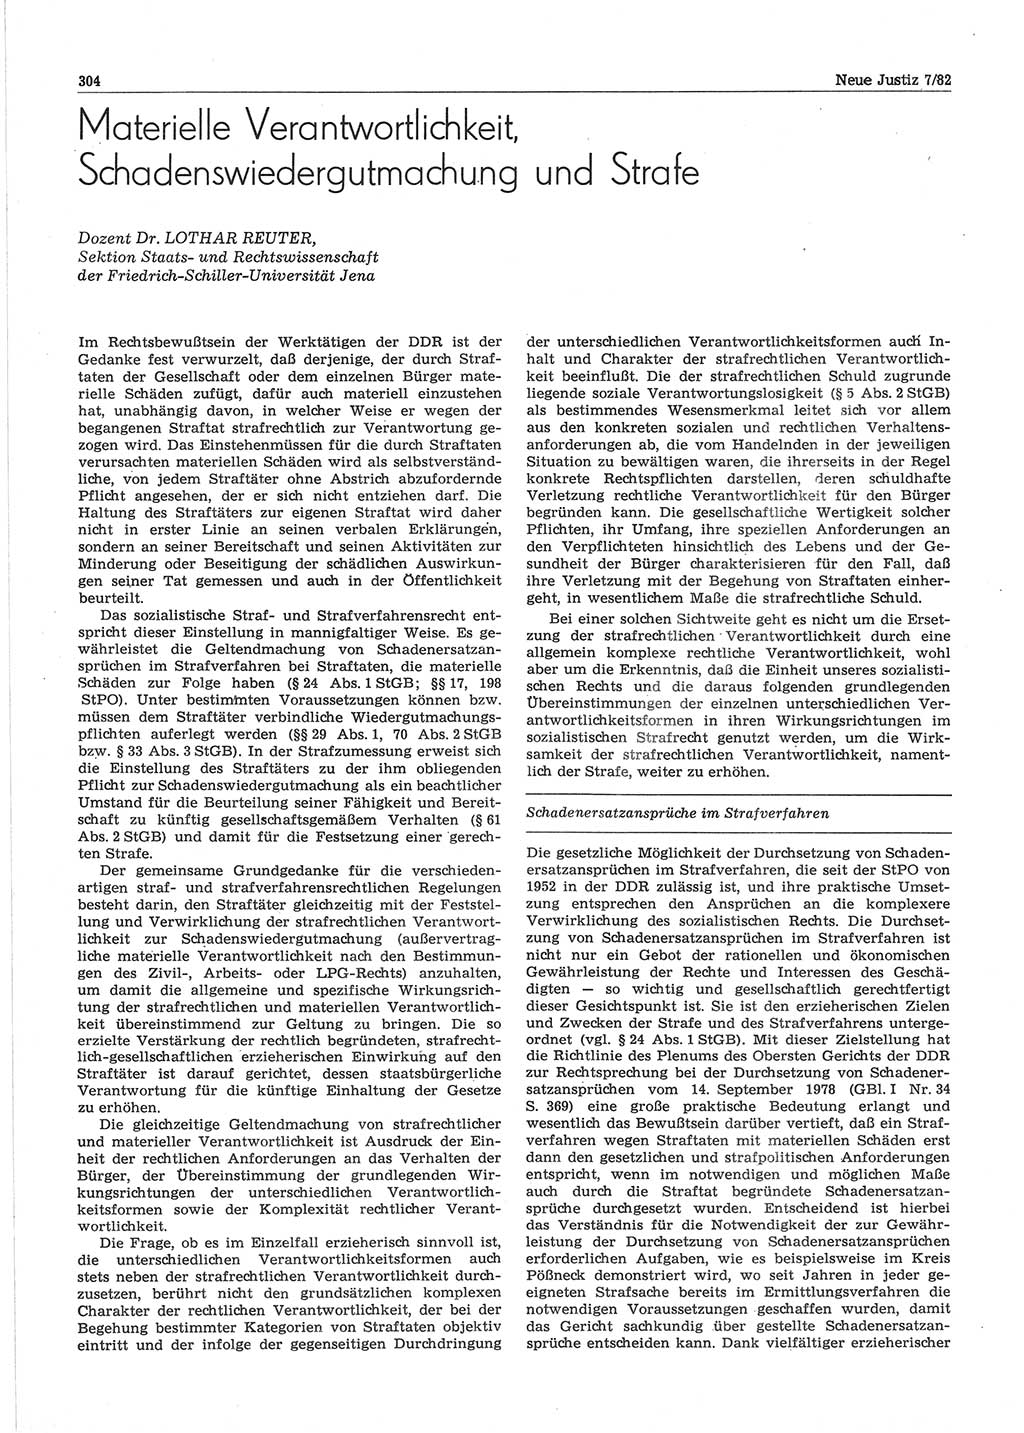 Neue Justiz (NJ), Zeitschrift für sozialistisches Recht und Gesetzlichkeit [Deutsche Demokratische Republik (DDR)], 36. Jahrgang 1982, Seite 304 (NJ DDR 1982, S. 304)